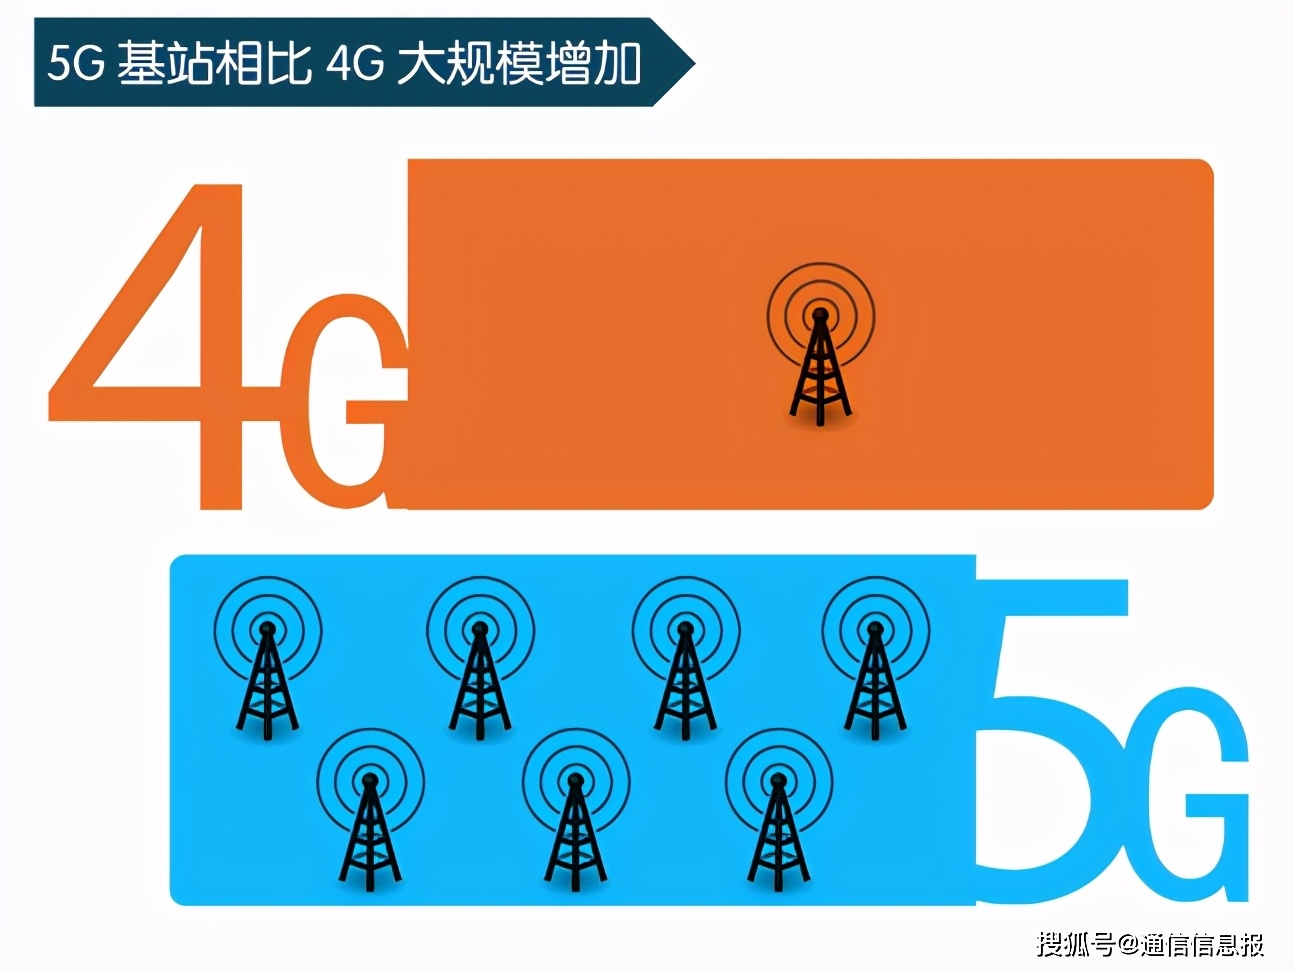 5G 网络速度远超 4G，引发热烈反响，其强大之处值得深入研究  第1张